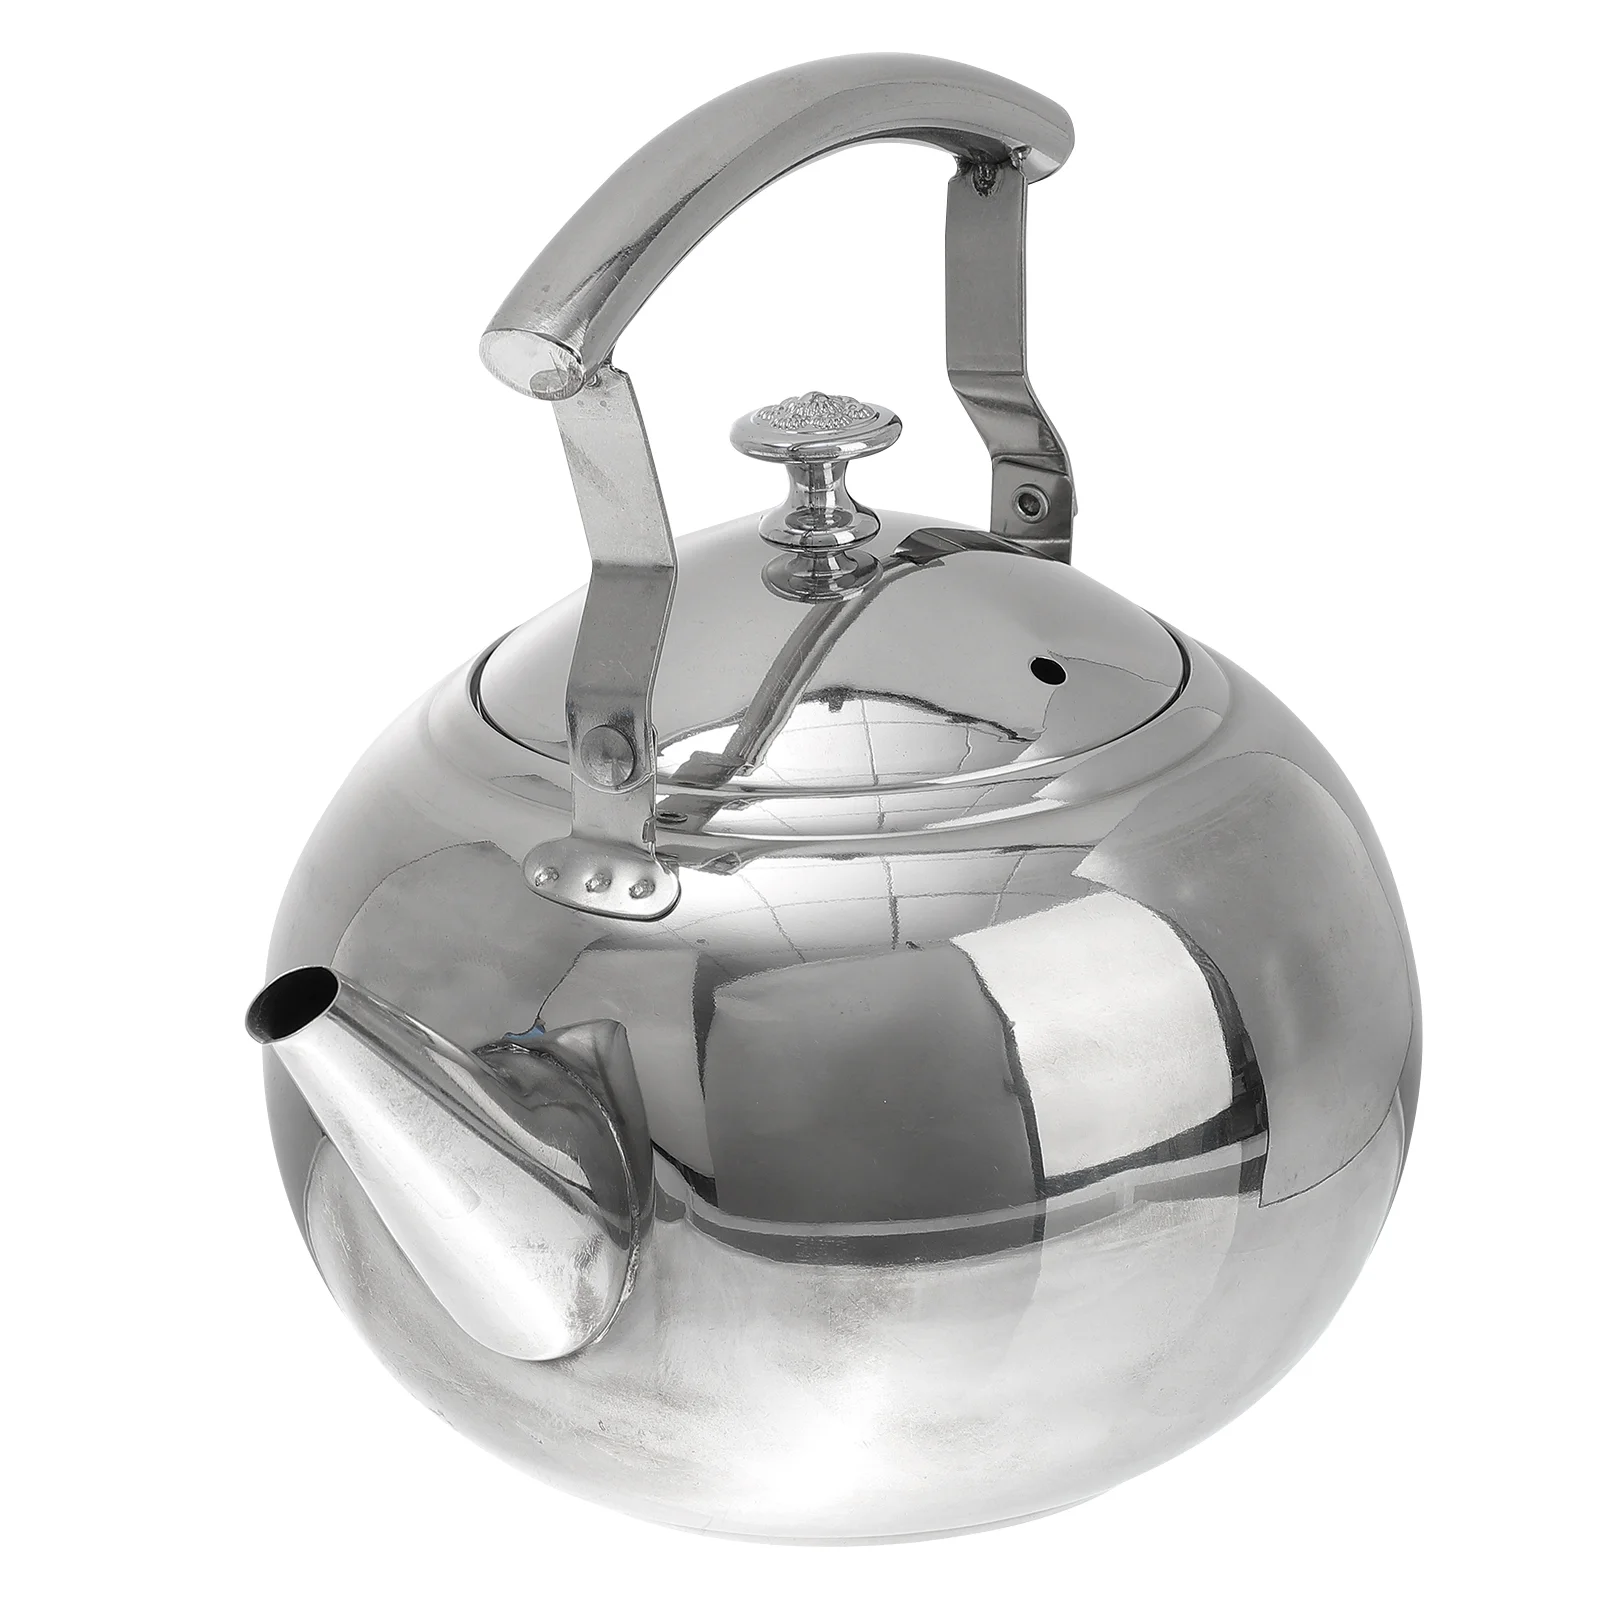 

Кастрюля, утолщенный чайник для воды, домашний чайник, универсальная кипящая Бытовая газовая плита с подогревом